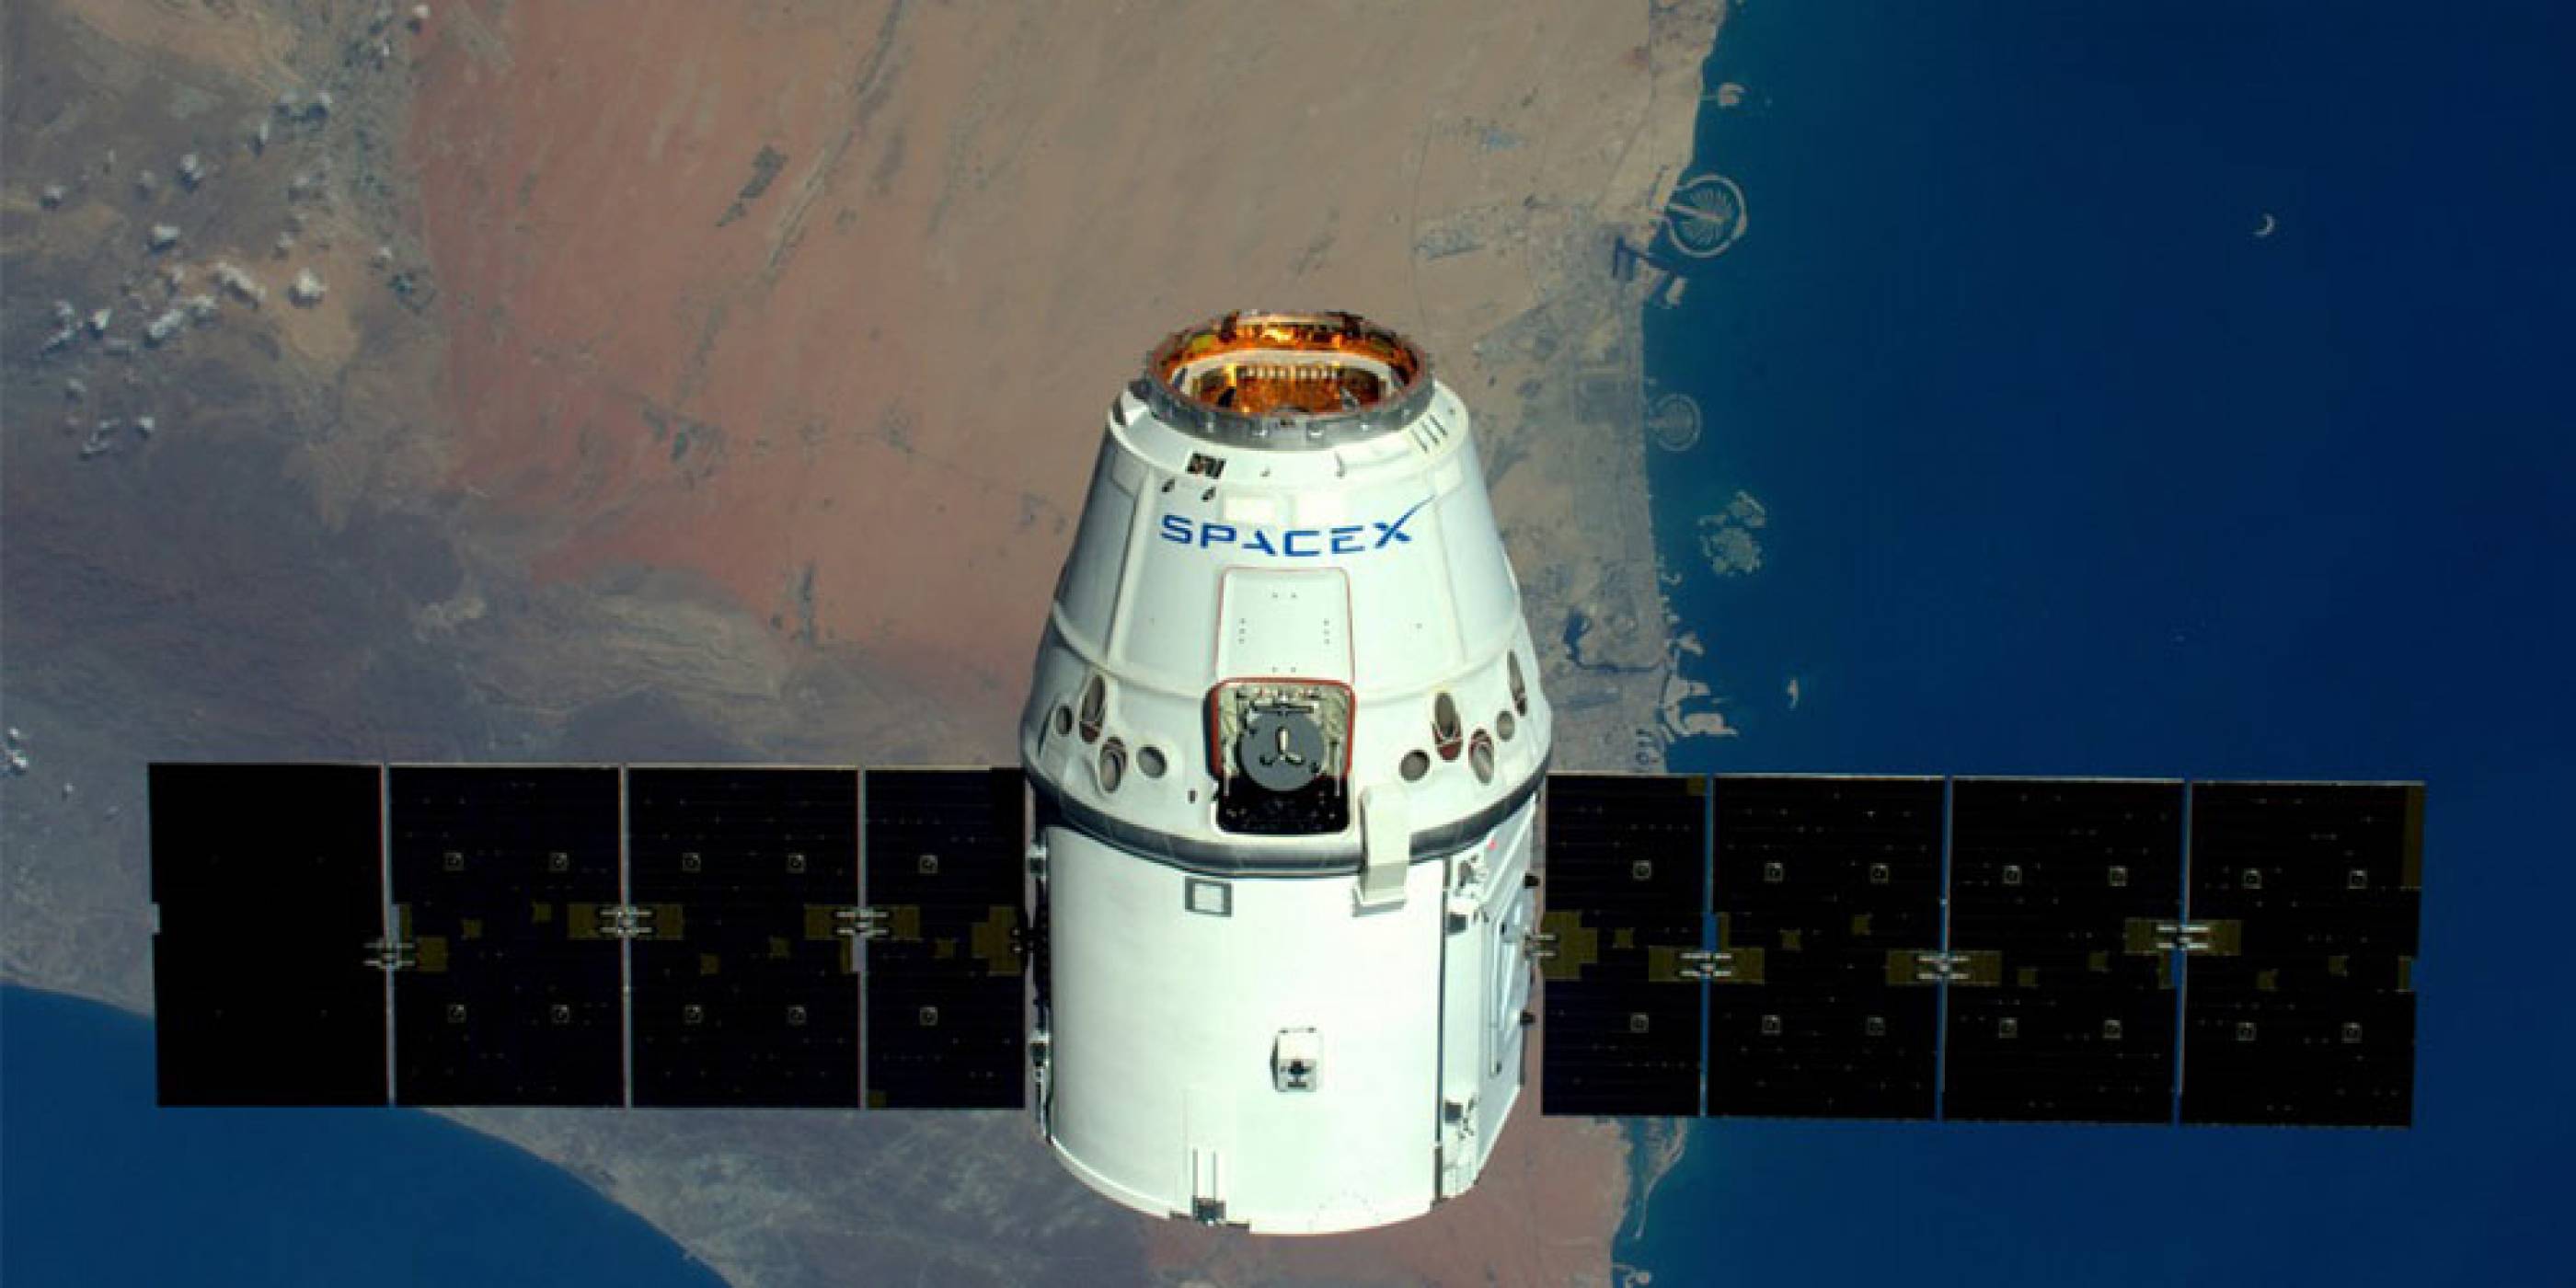 SpaceX възнамерява да изстреля първия си интернет сателит през 2019 година